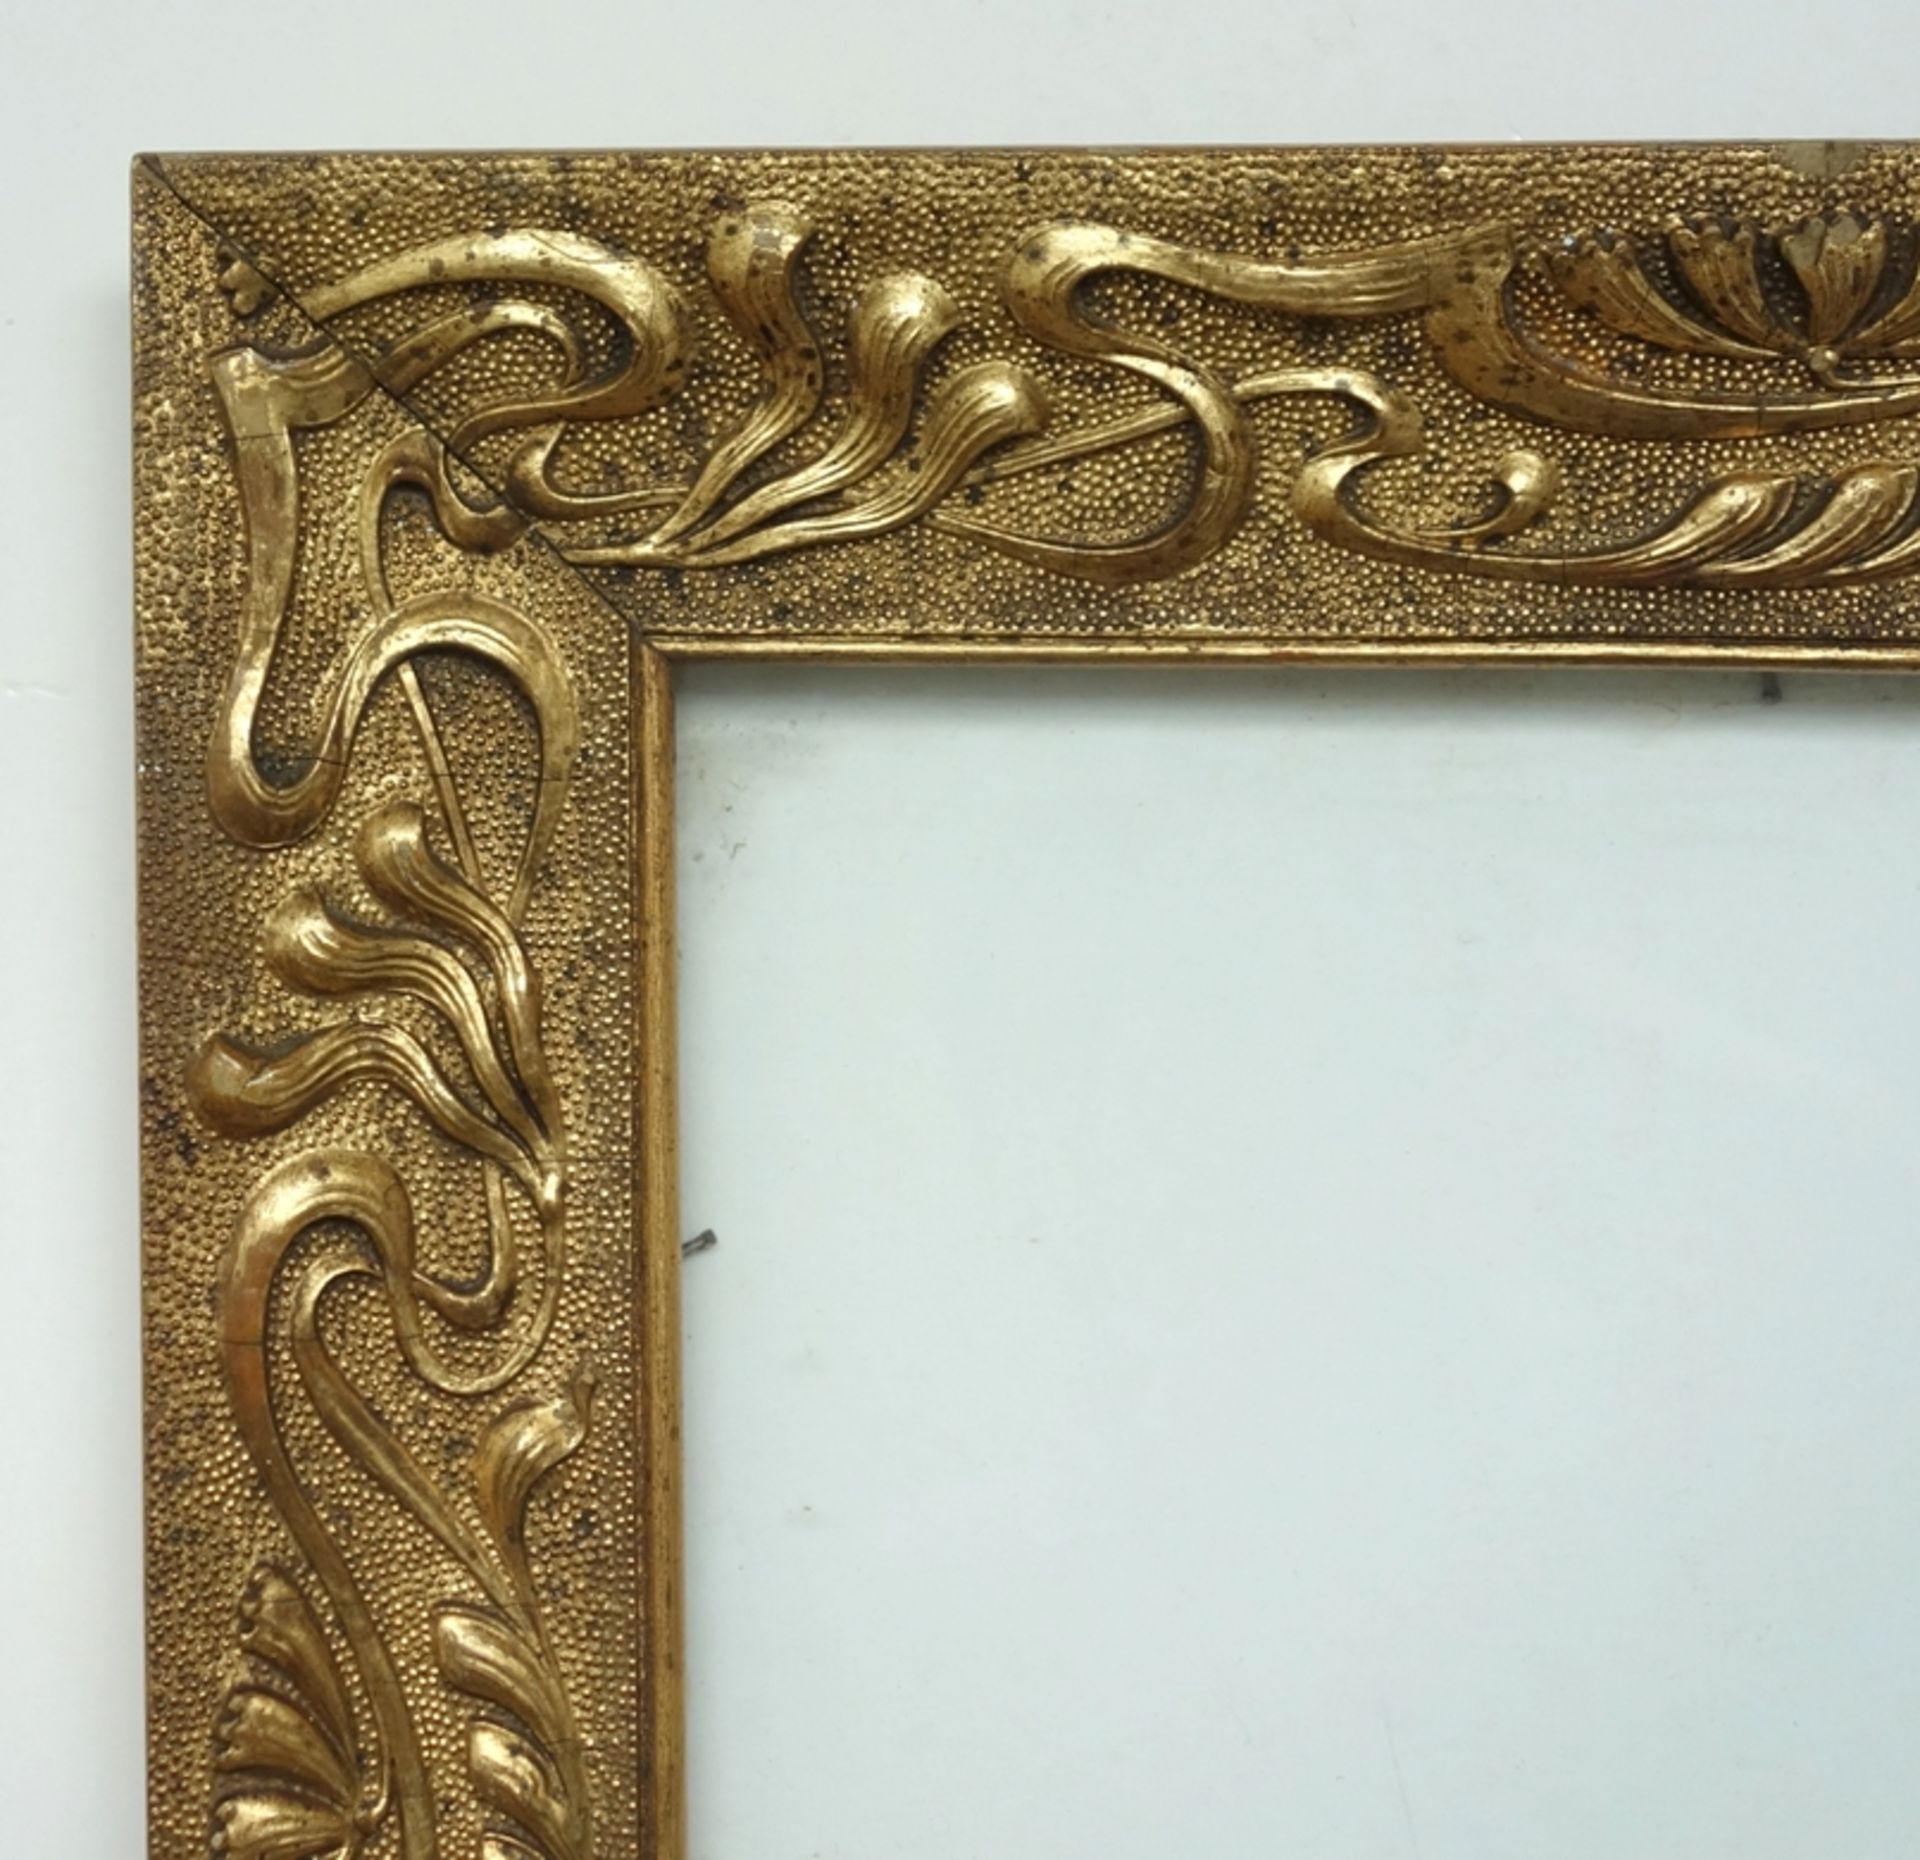 Goldstuckrahmen mit floralem Relief, Jugendstil, Innenmaß 46*40cm, Gesamt 53,5*47,5cm, 2 Ecken mit - Bild 2 aus 2